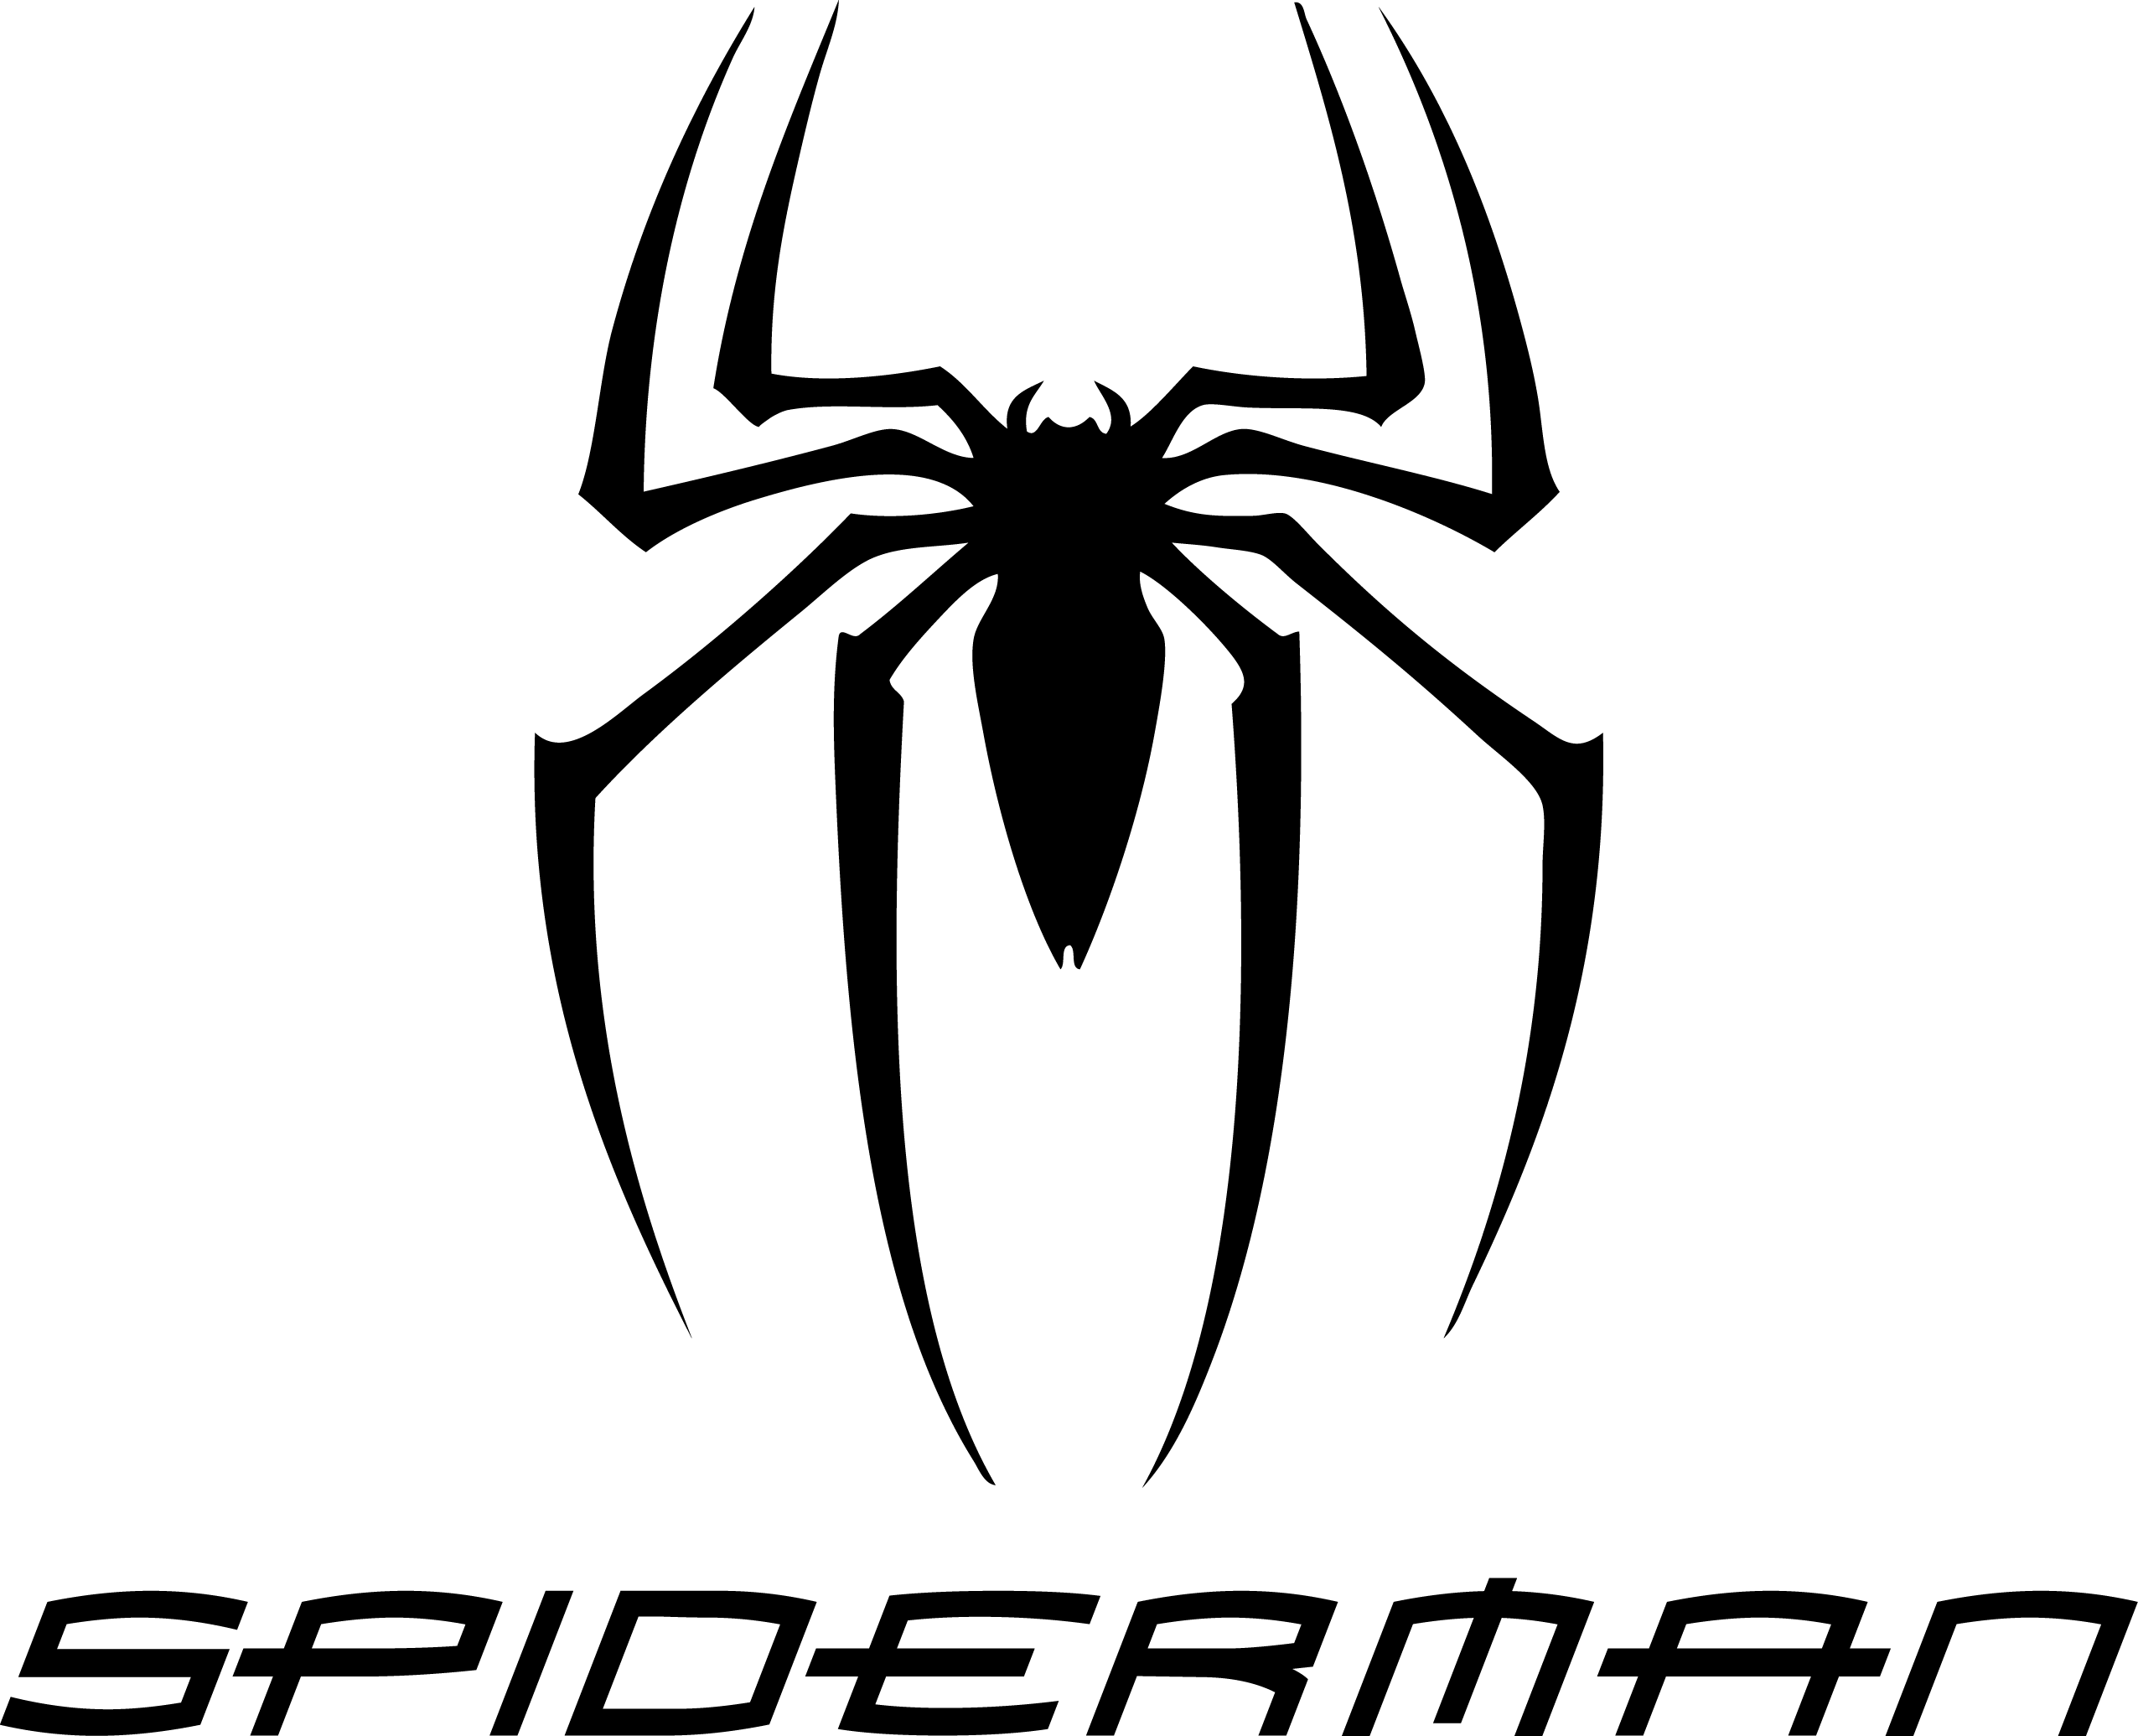 Spider-Man Logo - Spiderman Logo PNG Transparent Spiderman Logo.PNG Images. | PlusPNG